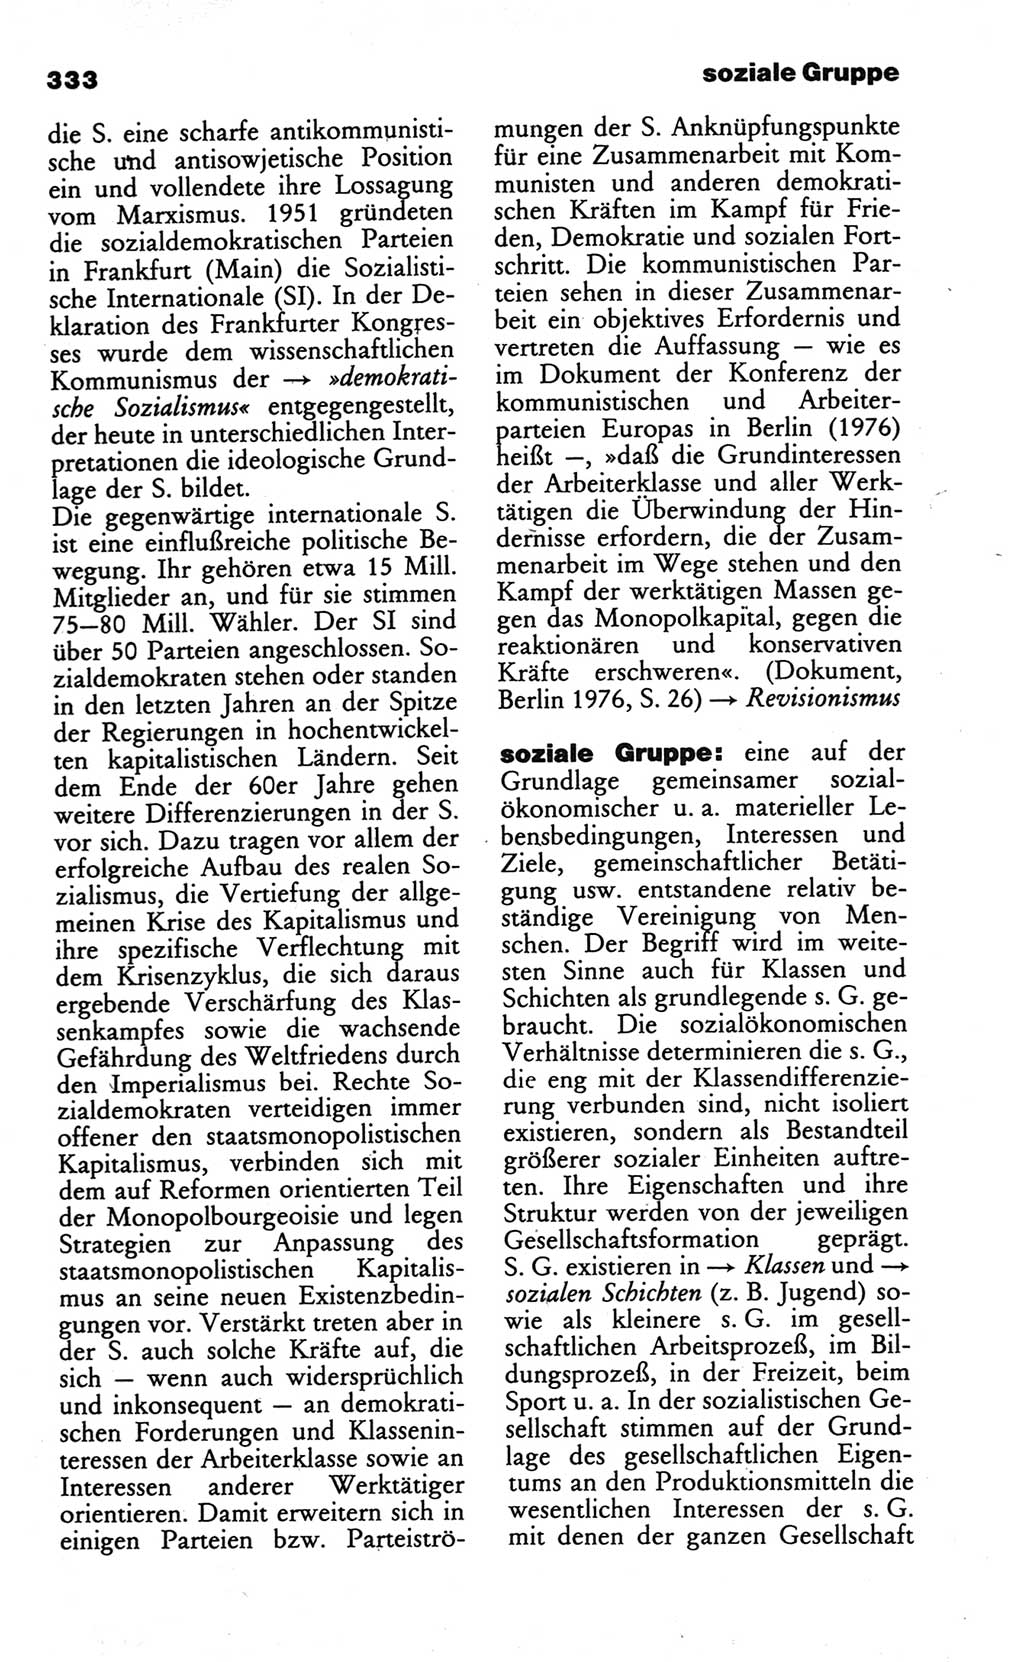 Wörterbuch des wissenschaftlichen Kommunismus [Deutsche Demokratische Republik (DDR)] 1984, Seite 333 (Wb. wiss. Komm. DDR 1984, S. 333)